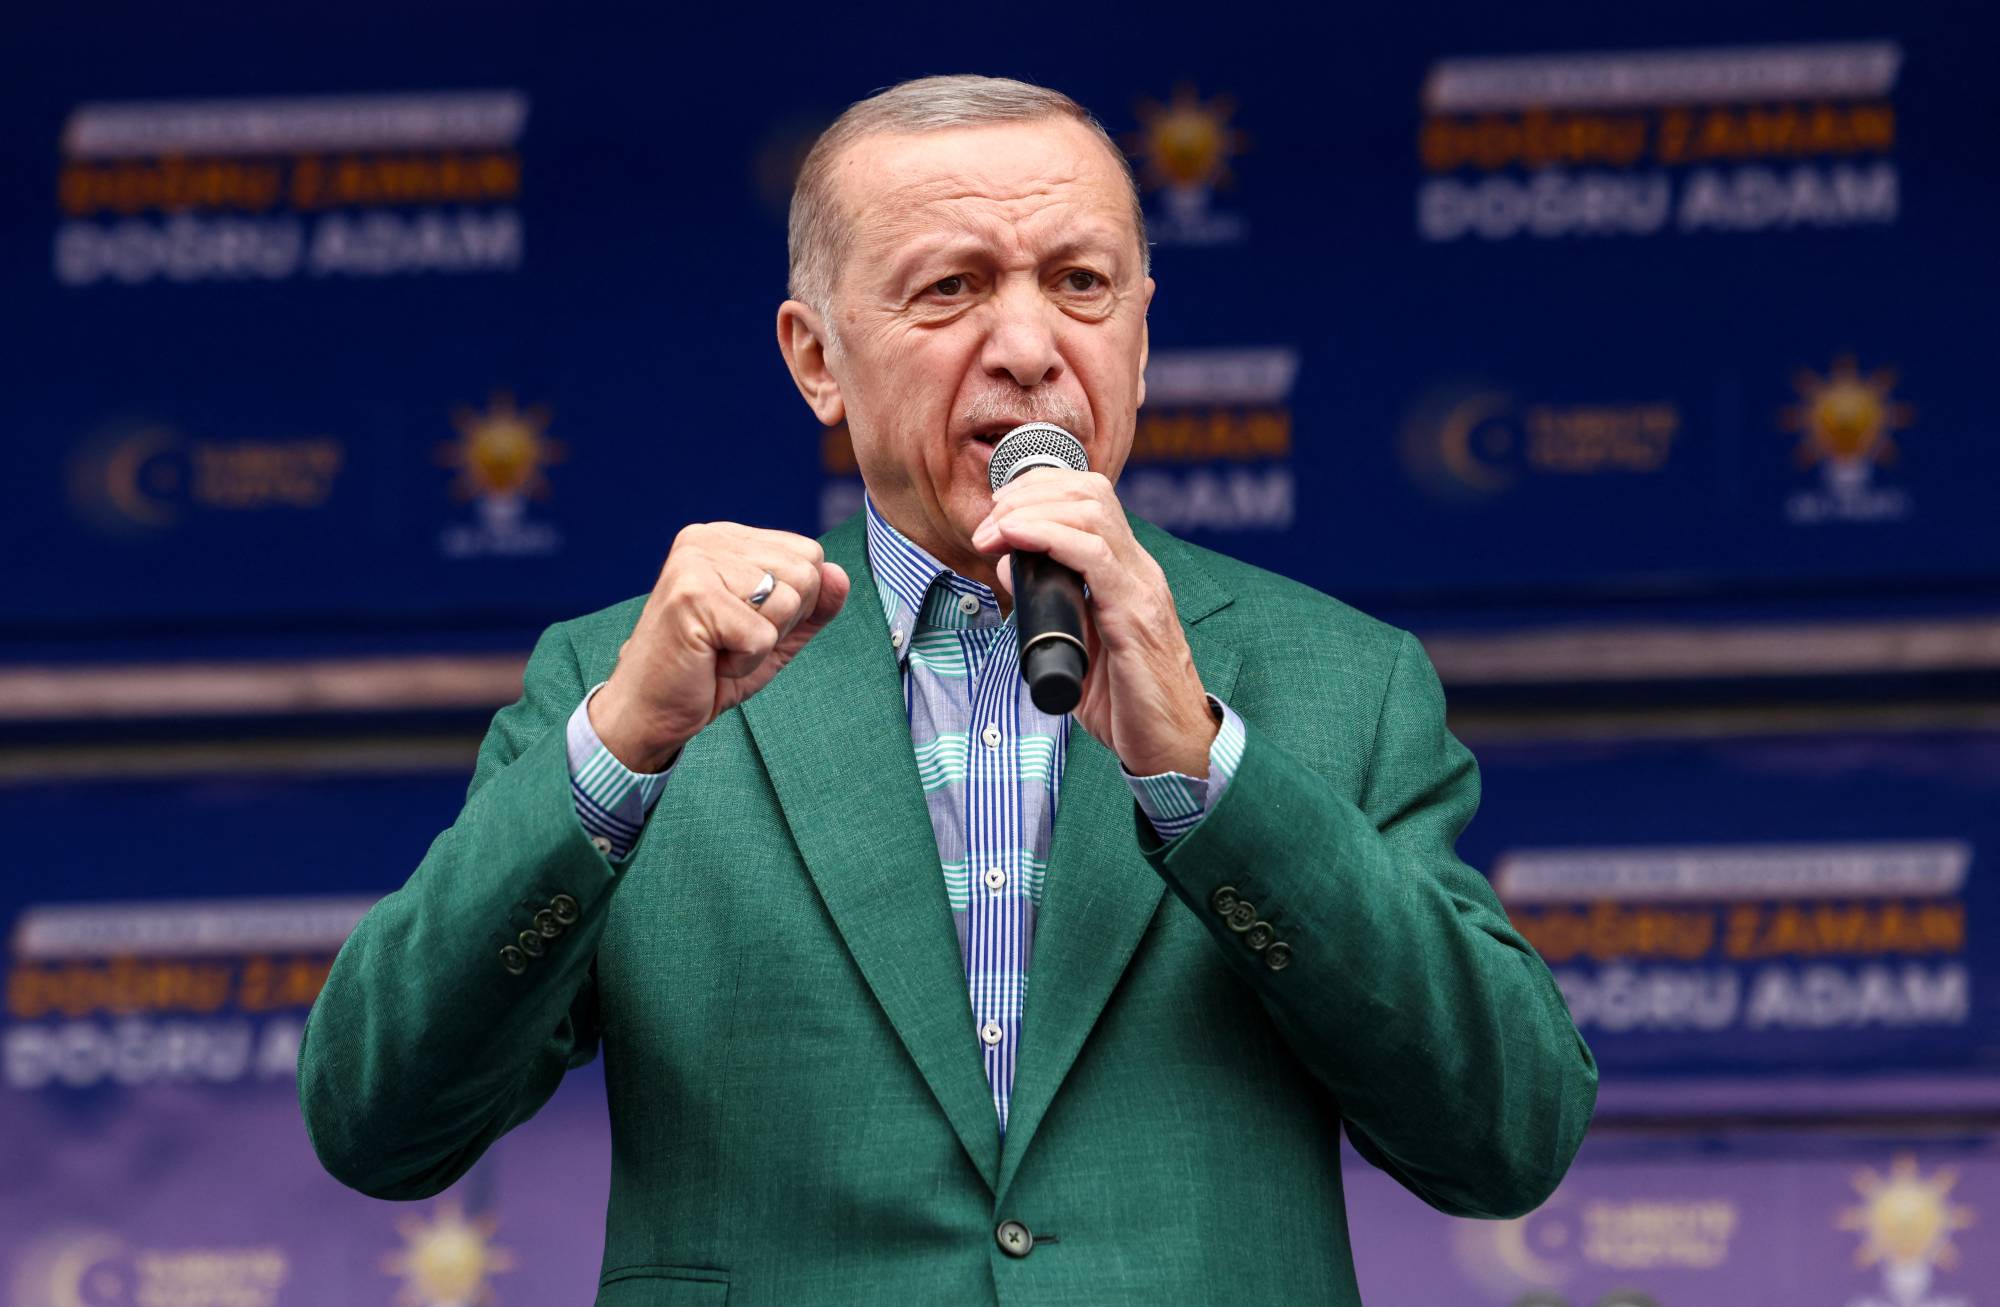 Emekliye 7.000 TL ÖDEME! Cumhurbaşkanı Erdoğan Emeklilerin Beklediği Müjdeyi Verdi! Ek Ödemeyle Maaşlar Artacak